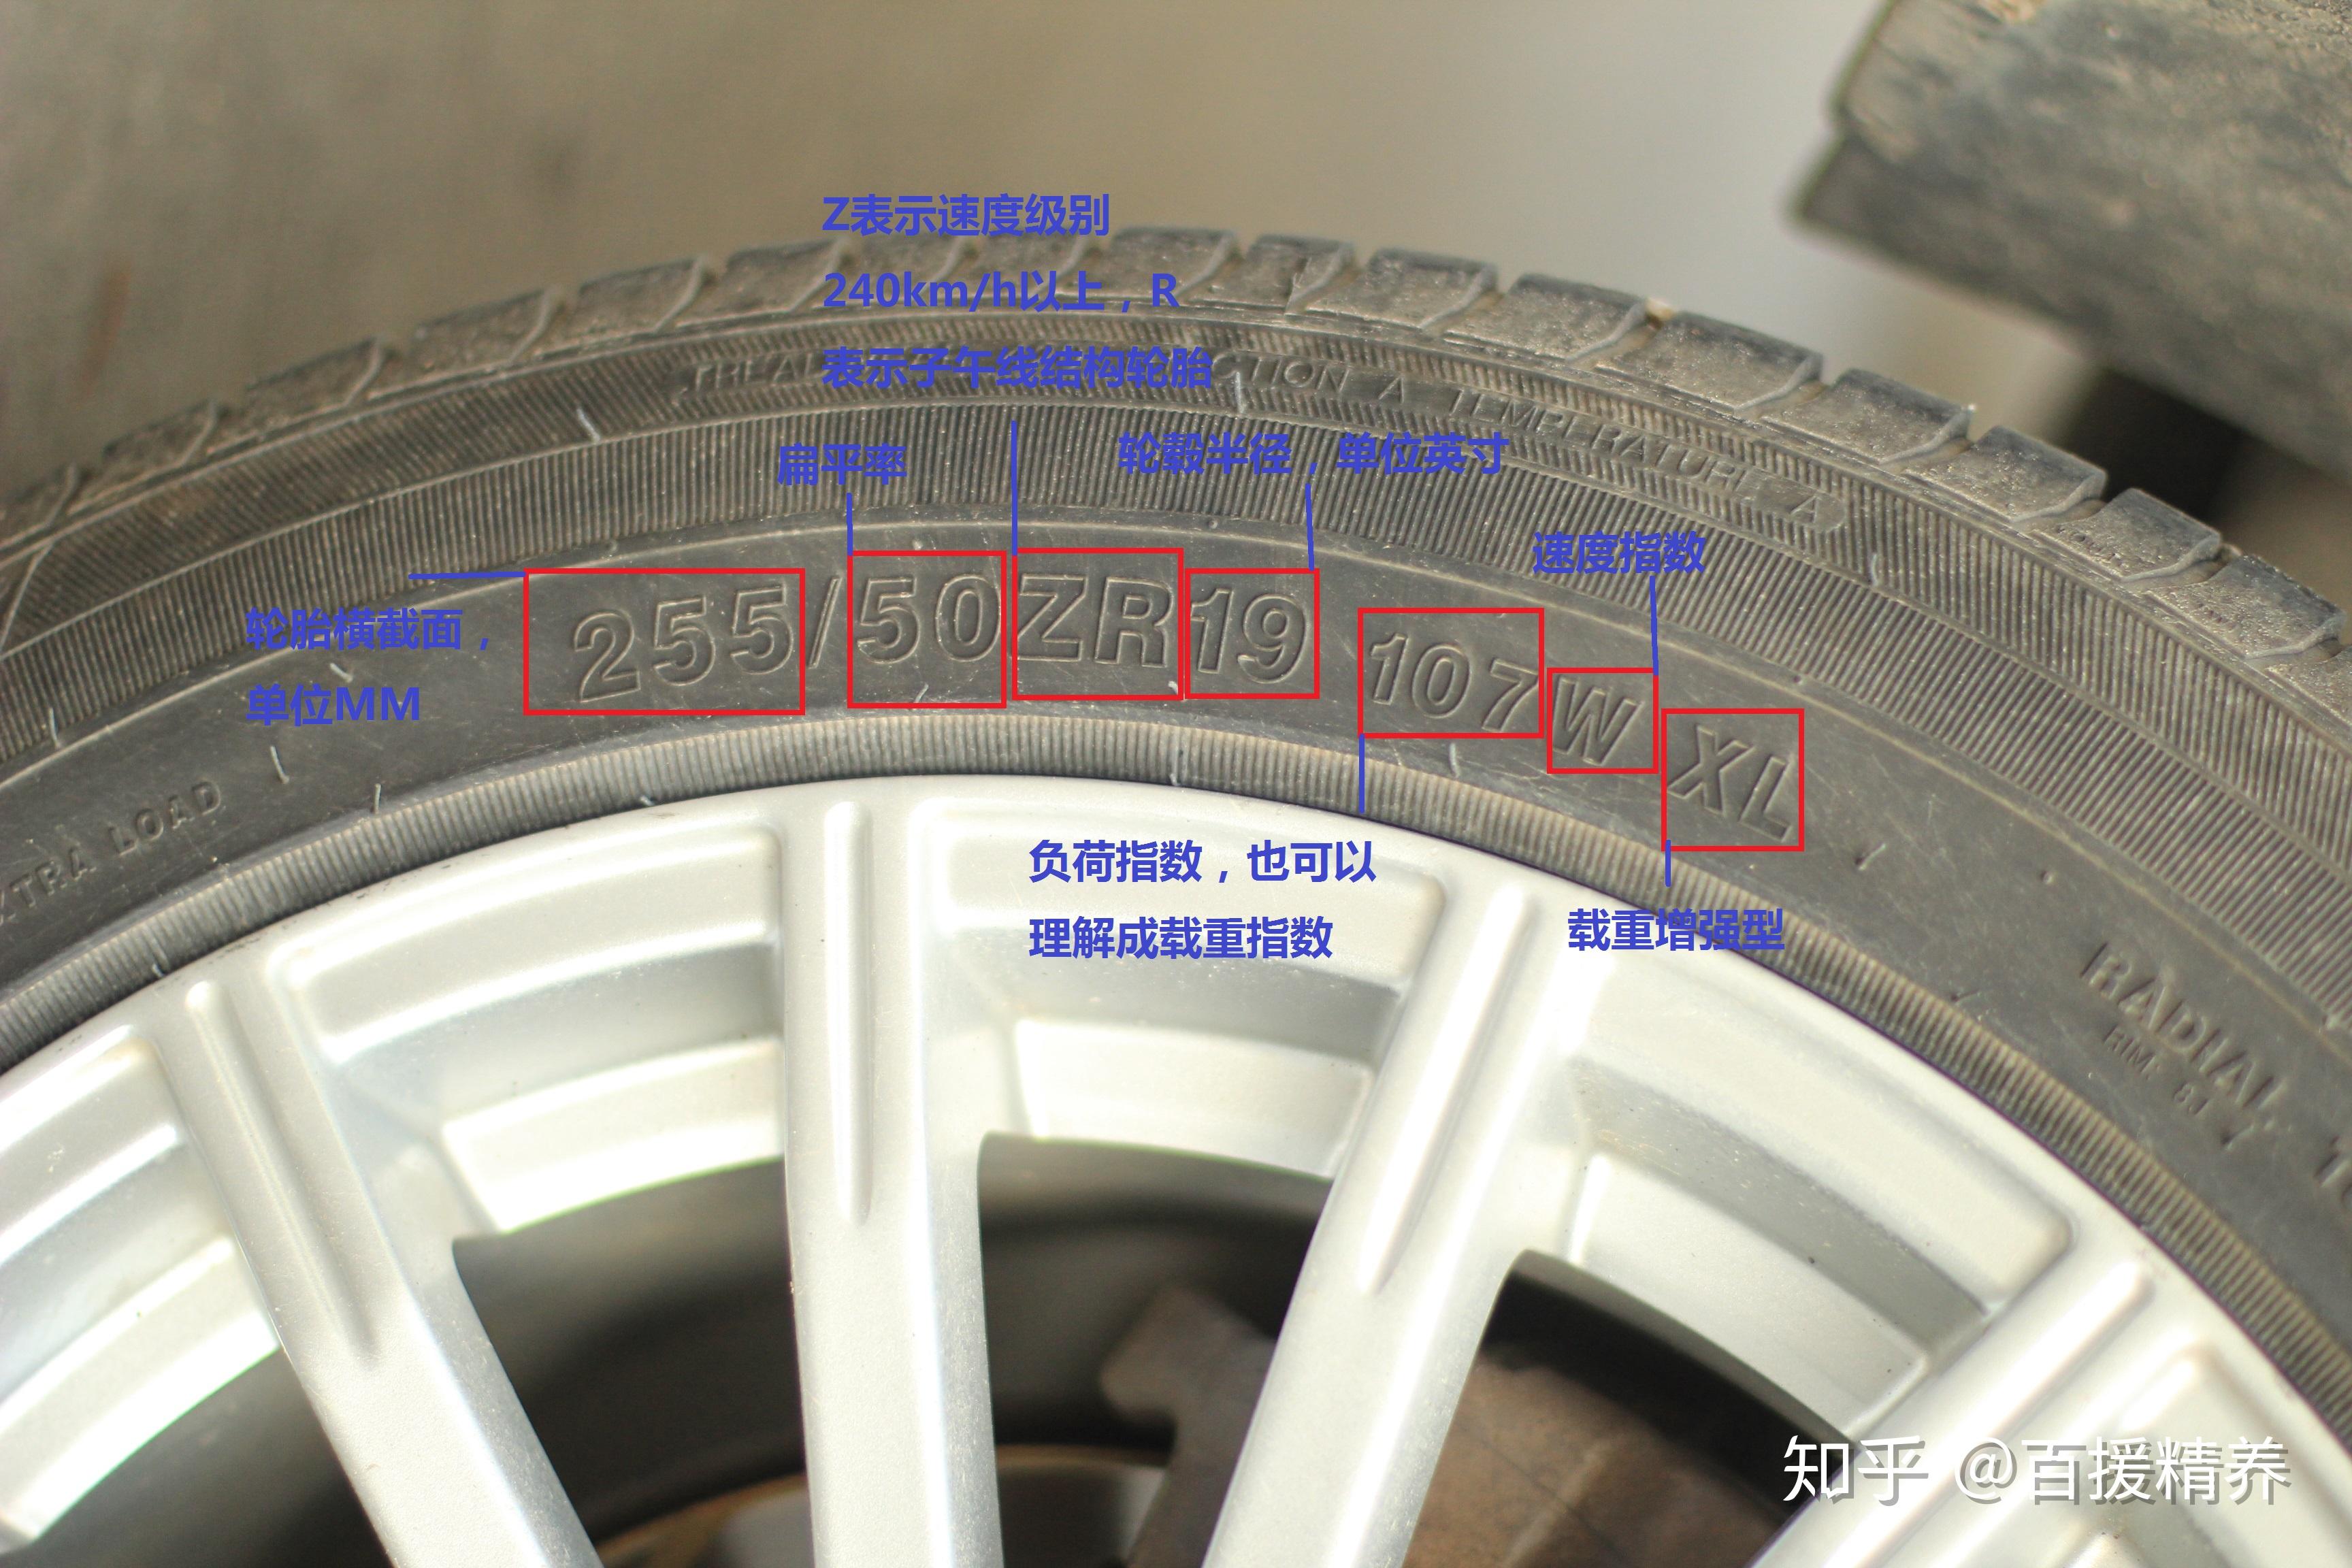 225:表示该轮胎的截面宽度为225mm;65:表示该轮胎的扁平率,该参数比较